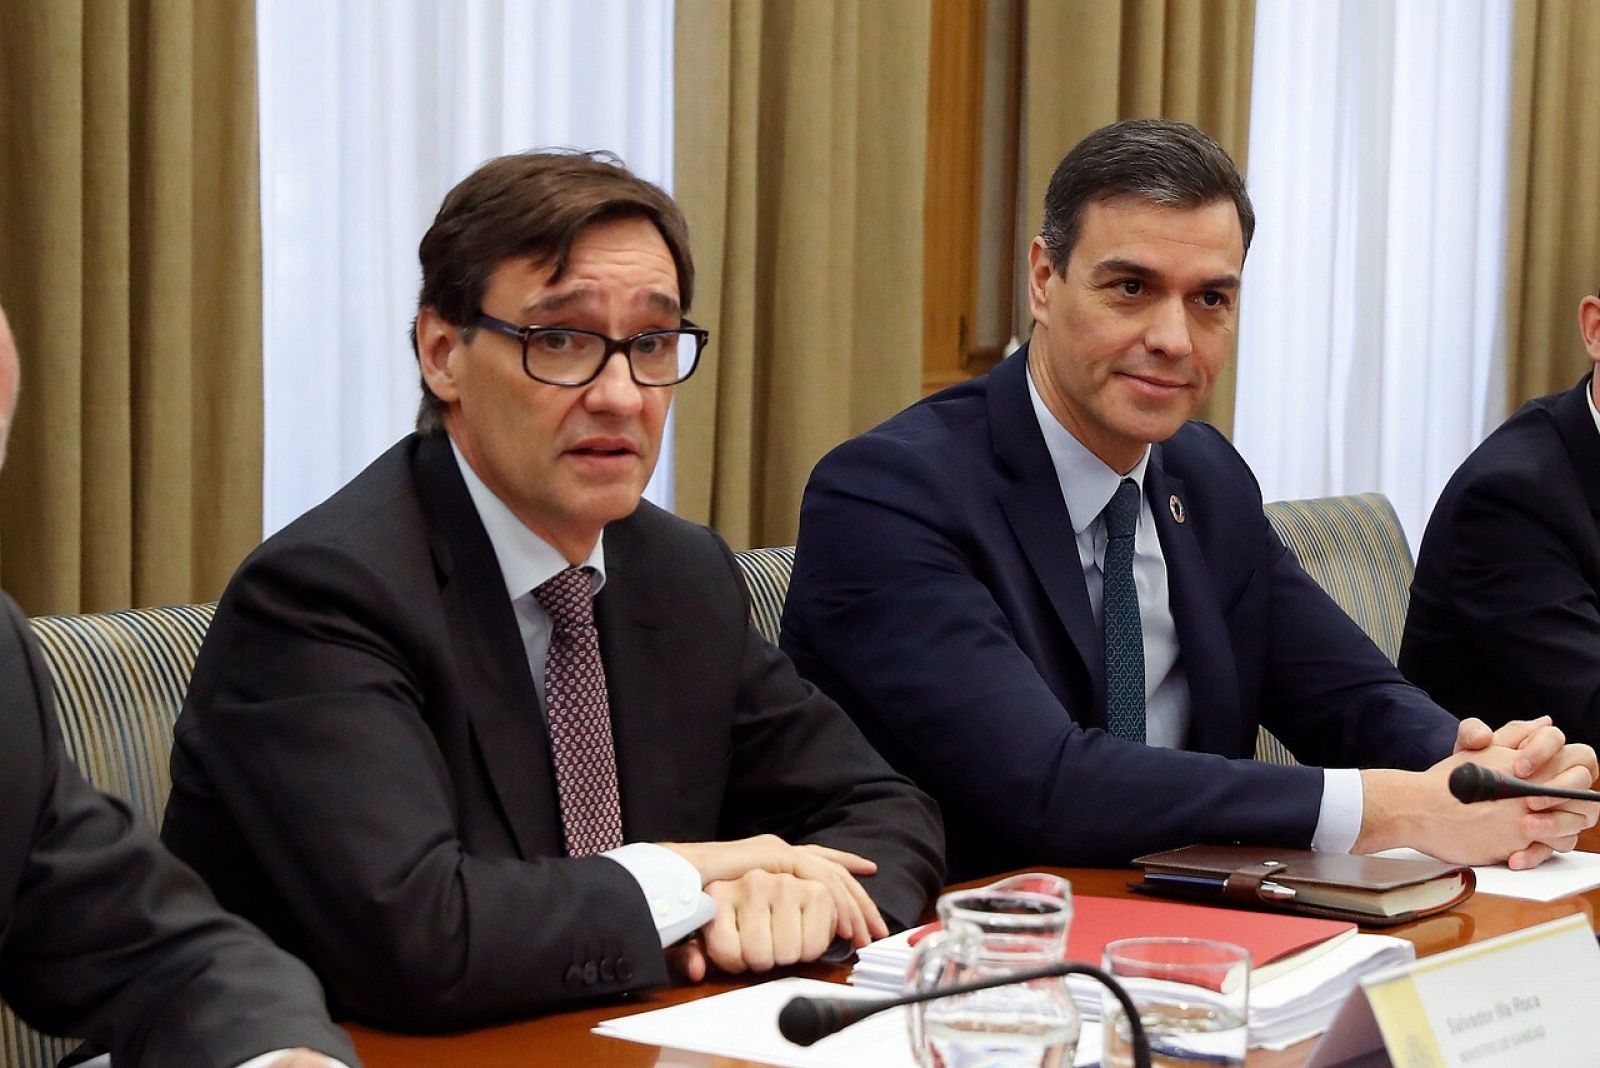 Pedro Sánchez preside por primera vez el comité de seguimiento del coronavirus - RTVE.es